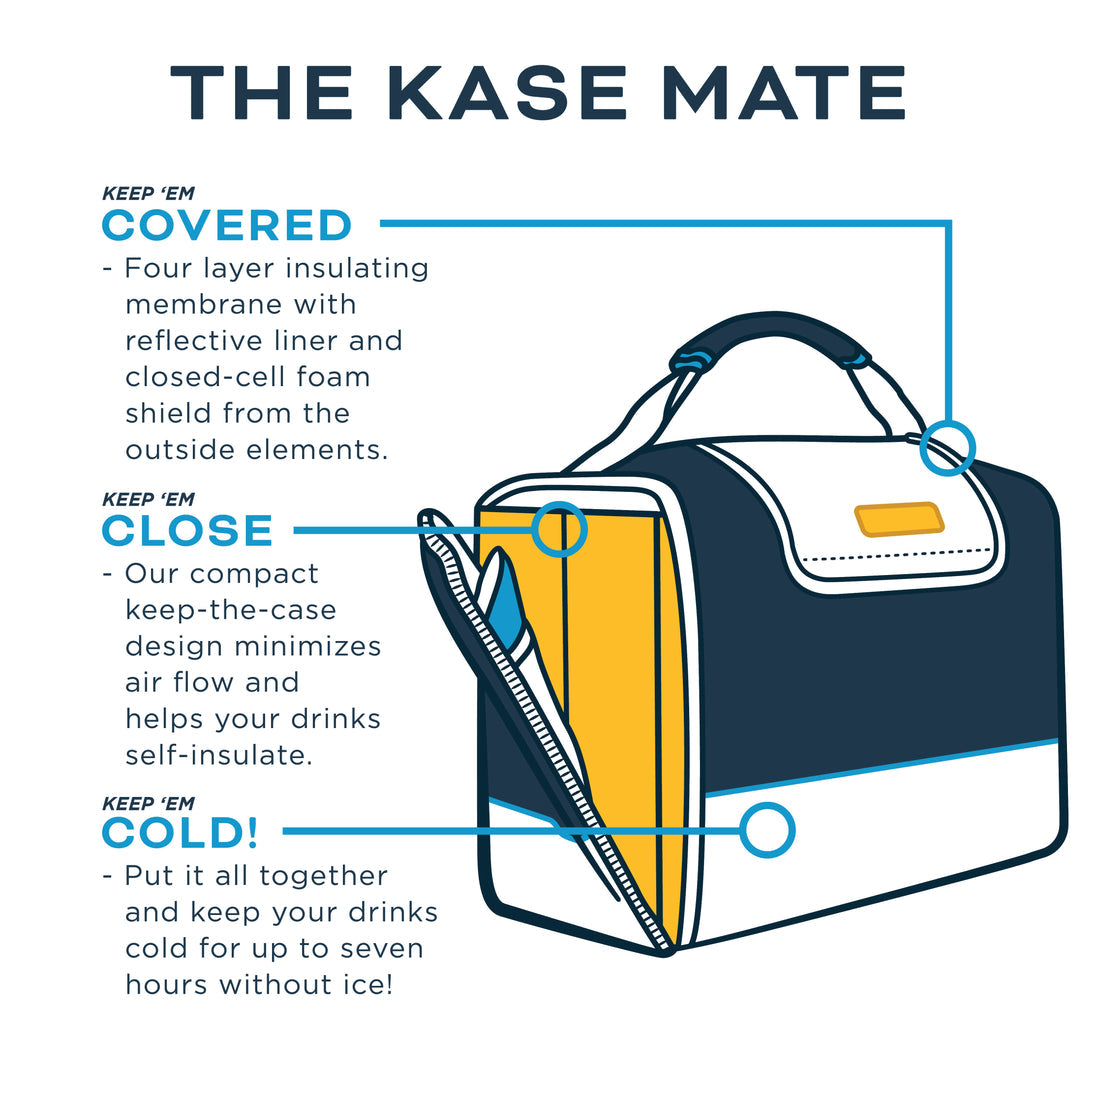 Kanga Kase Mate 24 Pack Cooler- Realtree